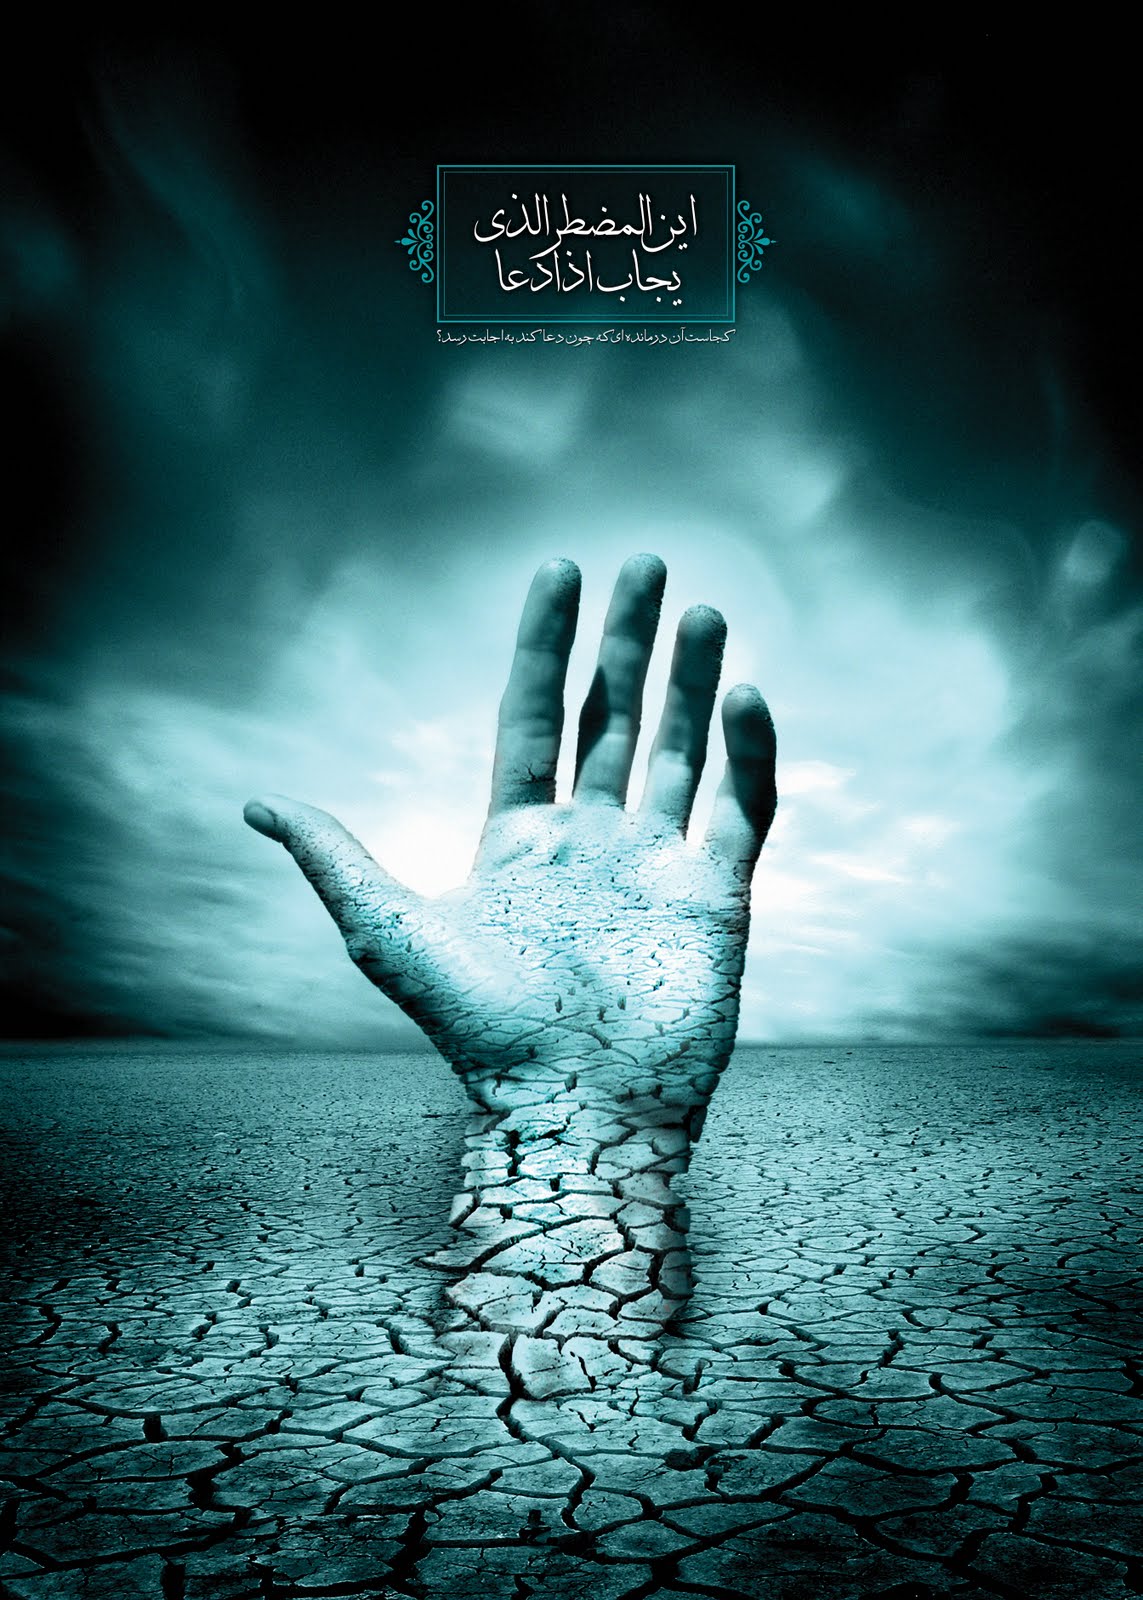 Imam Mahdi.Savior-The arrival-Hazrat Mahdi-Global Governance-Apocalypse